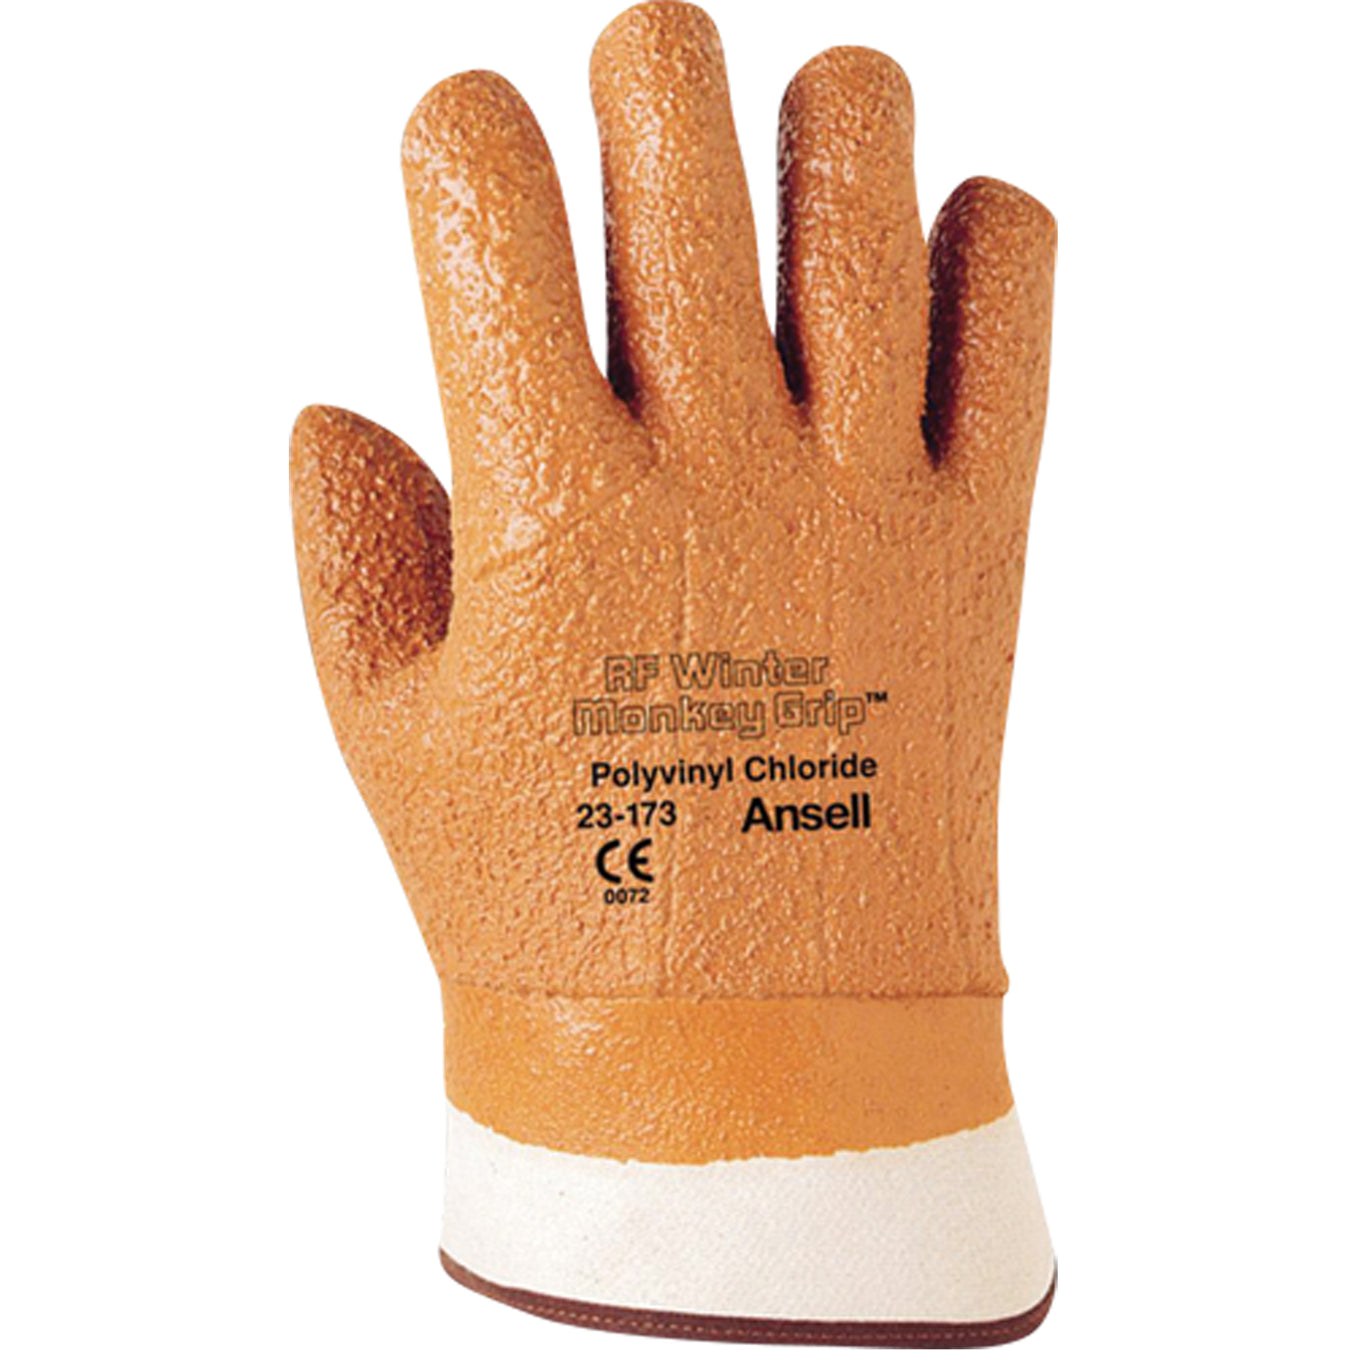 Winter Monkey Grip® 23-173 Glove